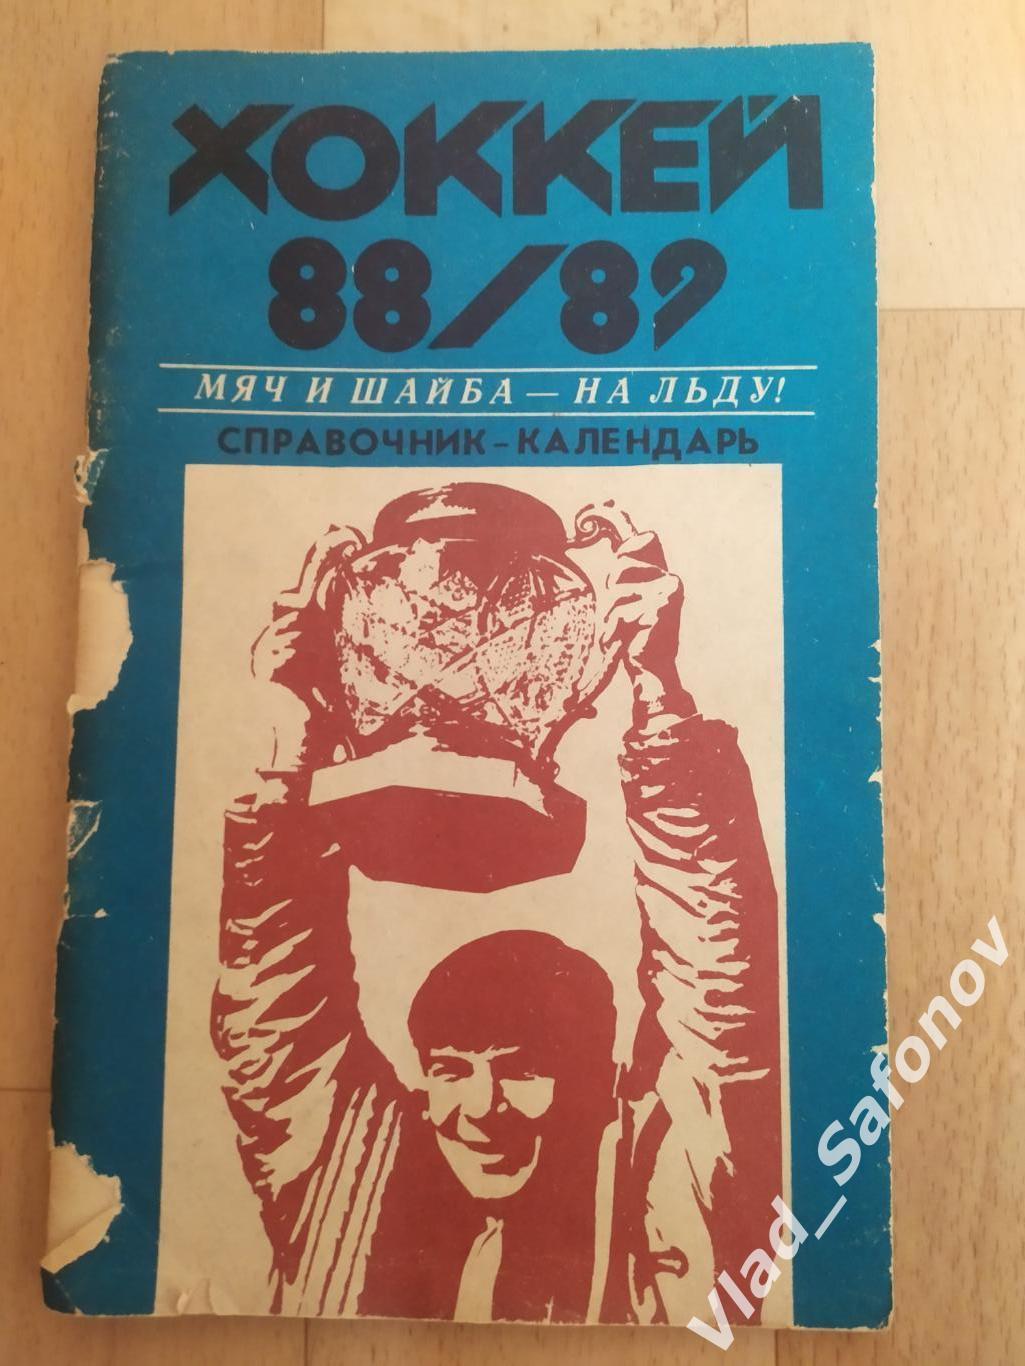 Календарь справочник. Хоккей. Хабаровск 1988. Мяч и Шайба.